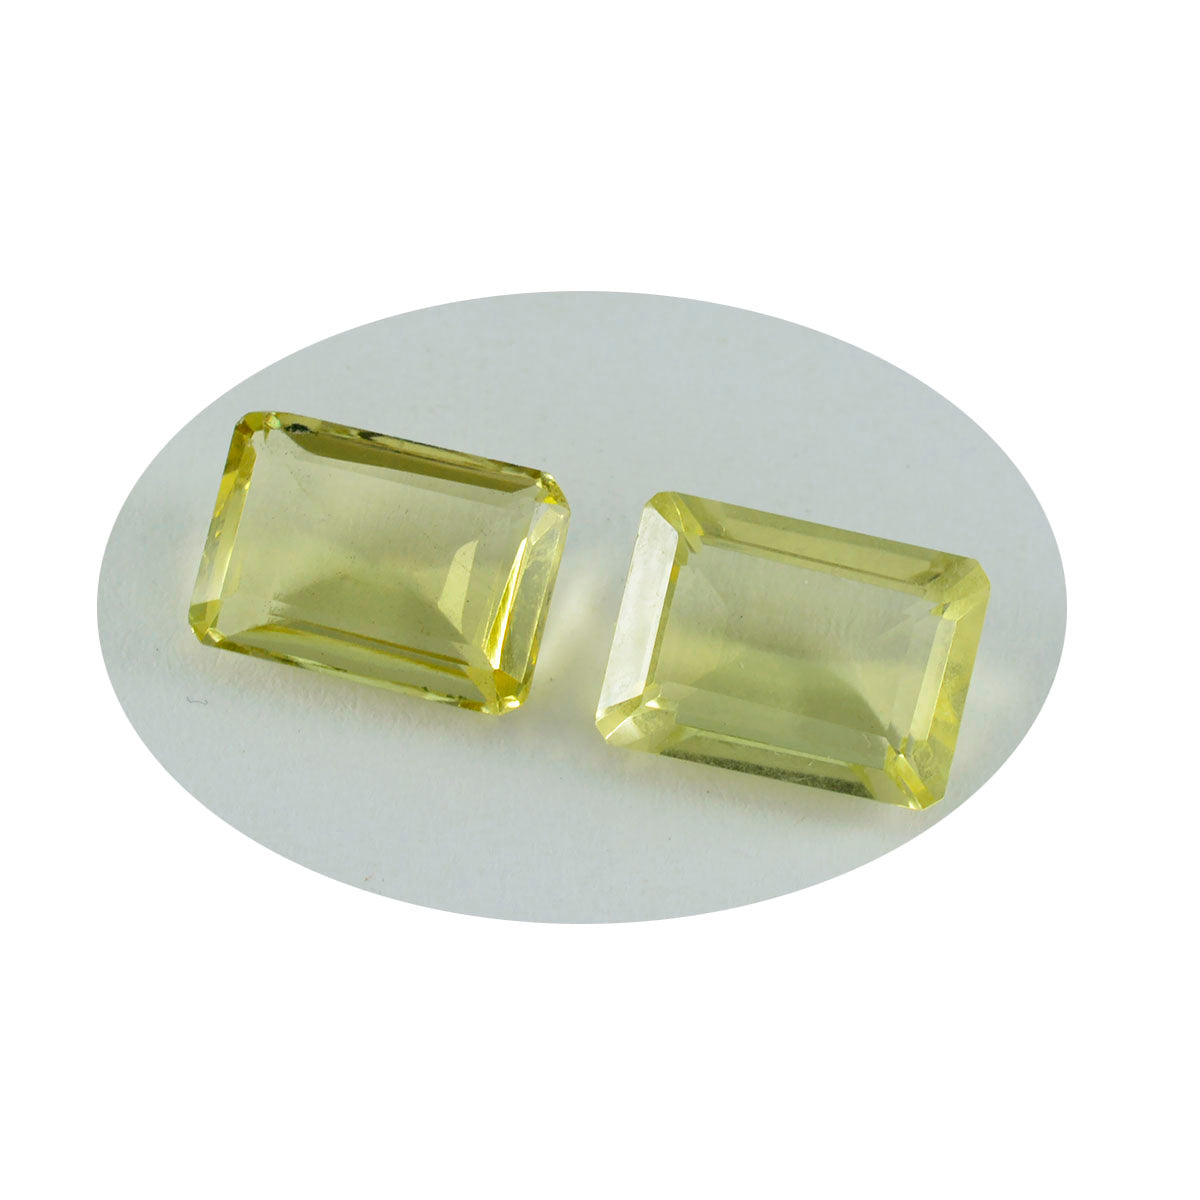 riyogems 1 шт., желтый лимонный кварц, граненые 12x16 мм, восьмиугольная форма, красивое качество, россыпь драгоценных камней